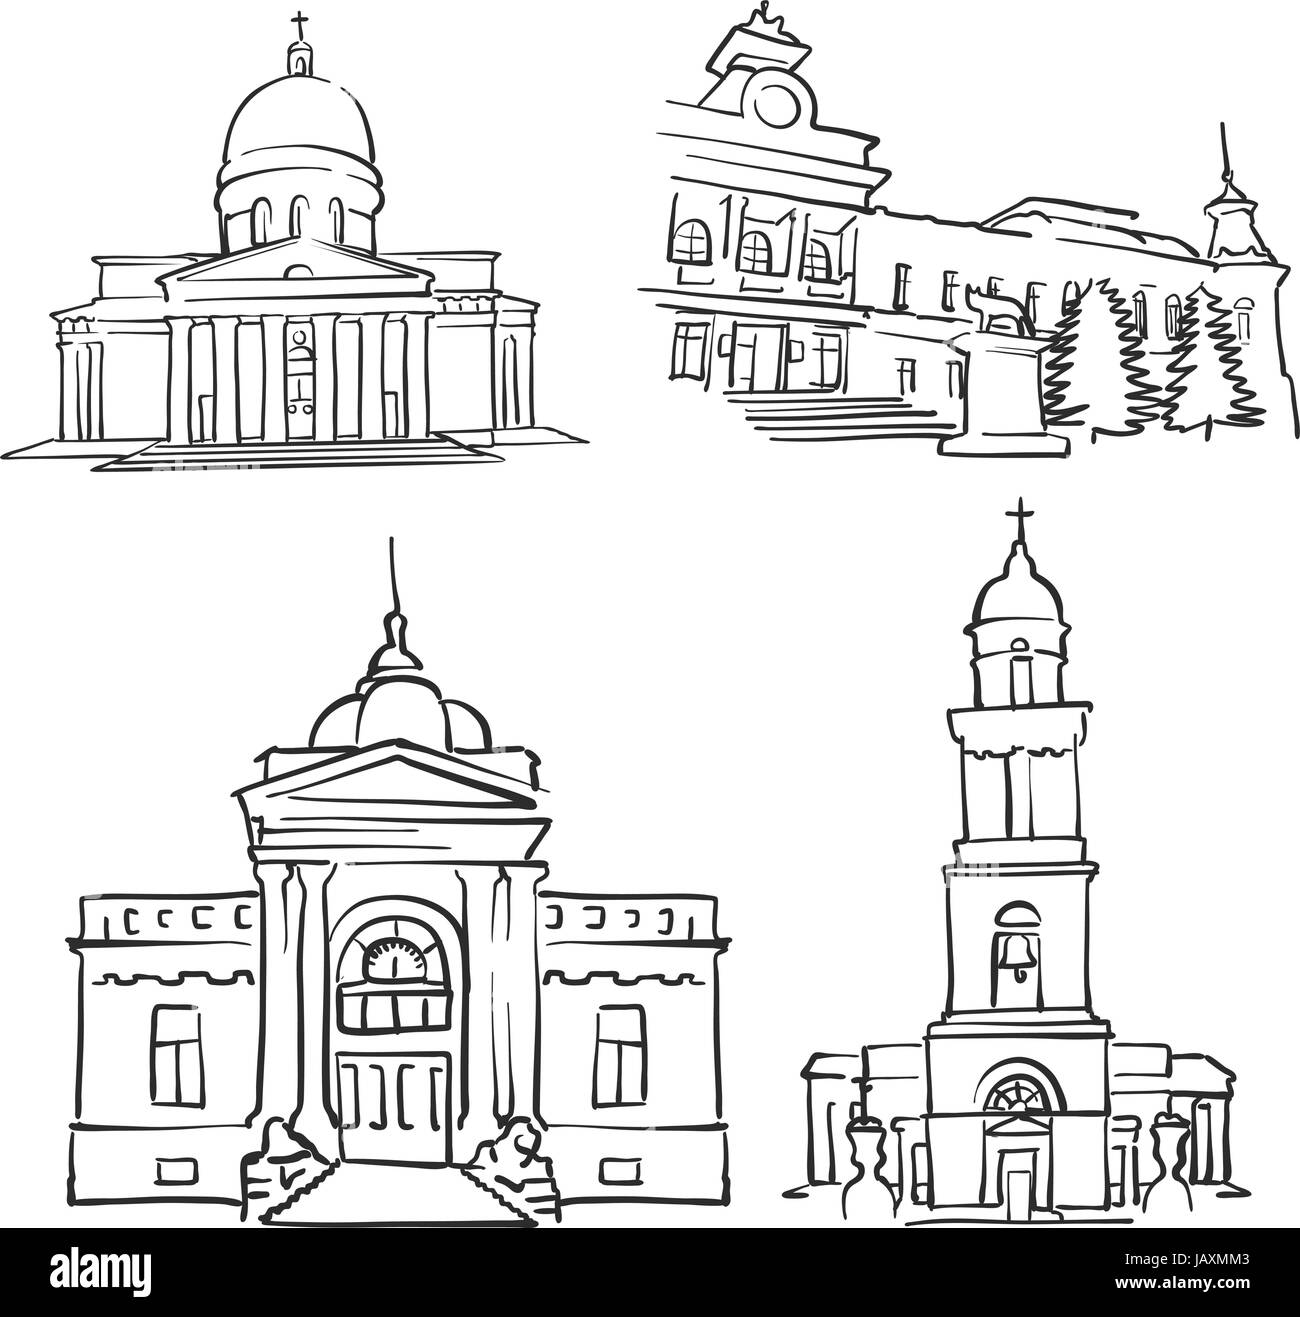 Chisinau, Republik Moldau, berühmte Gebäude, Monochrom beschriebenen Reisen Sehenswürdigkeiten, skalierbare Vektor-Illustration Stock Vektor